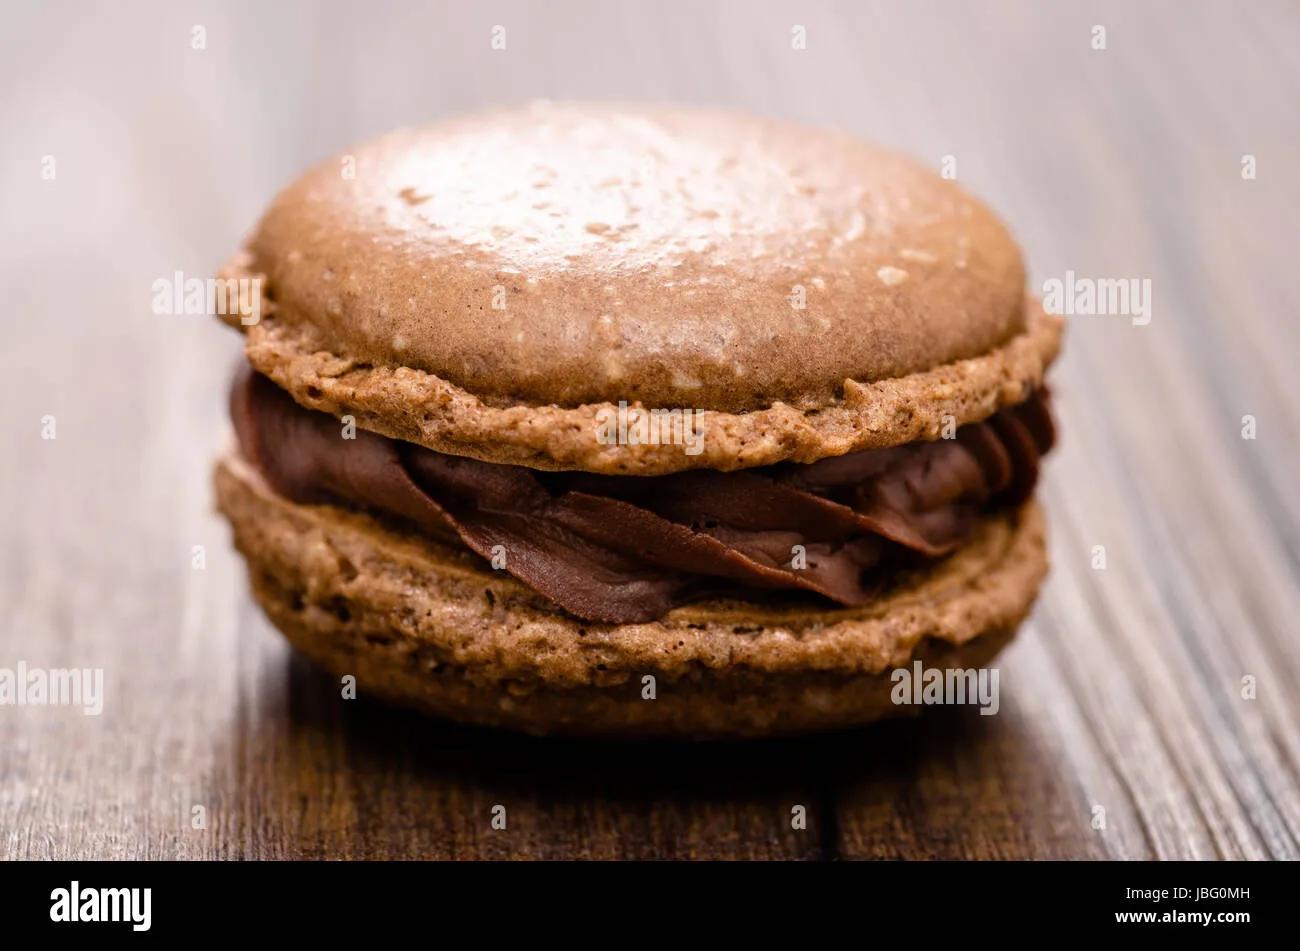 Macaron mit Galanche aus Schokolade und Kakao Baiser Stock Photo - Alamy